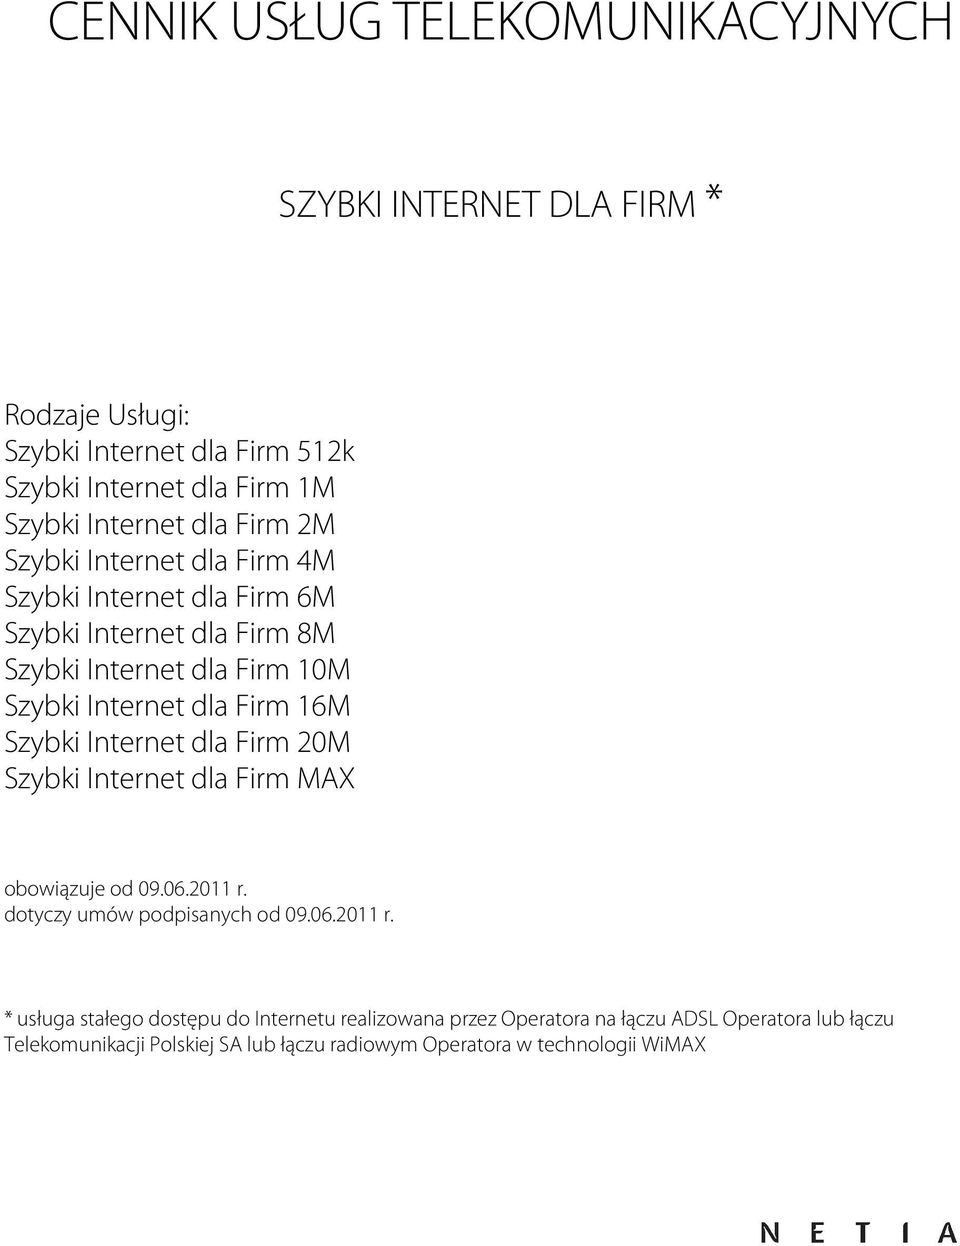 16M Szybki Internet dla Firm 20M Szybki Internet dla Firm MAX obowiązuje od 09.06.2011 r.